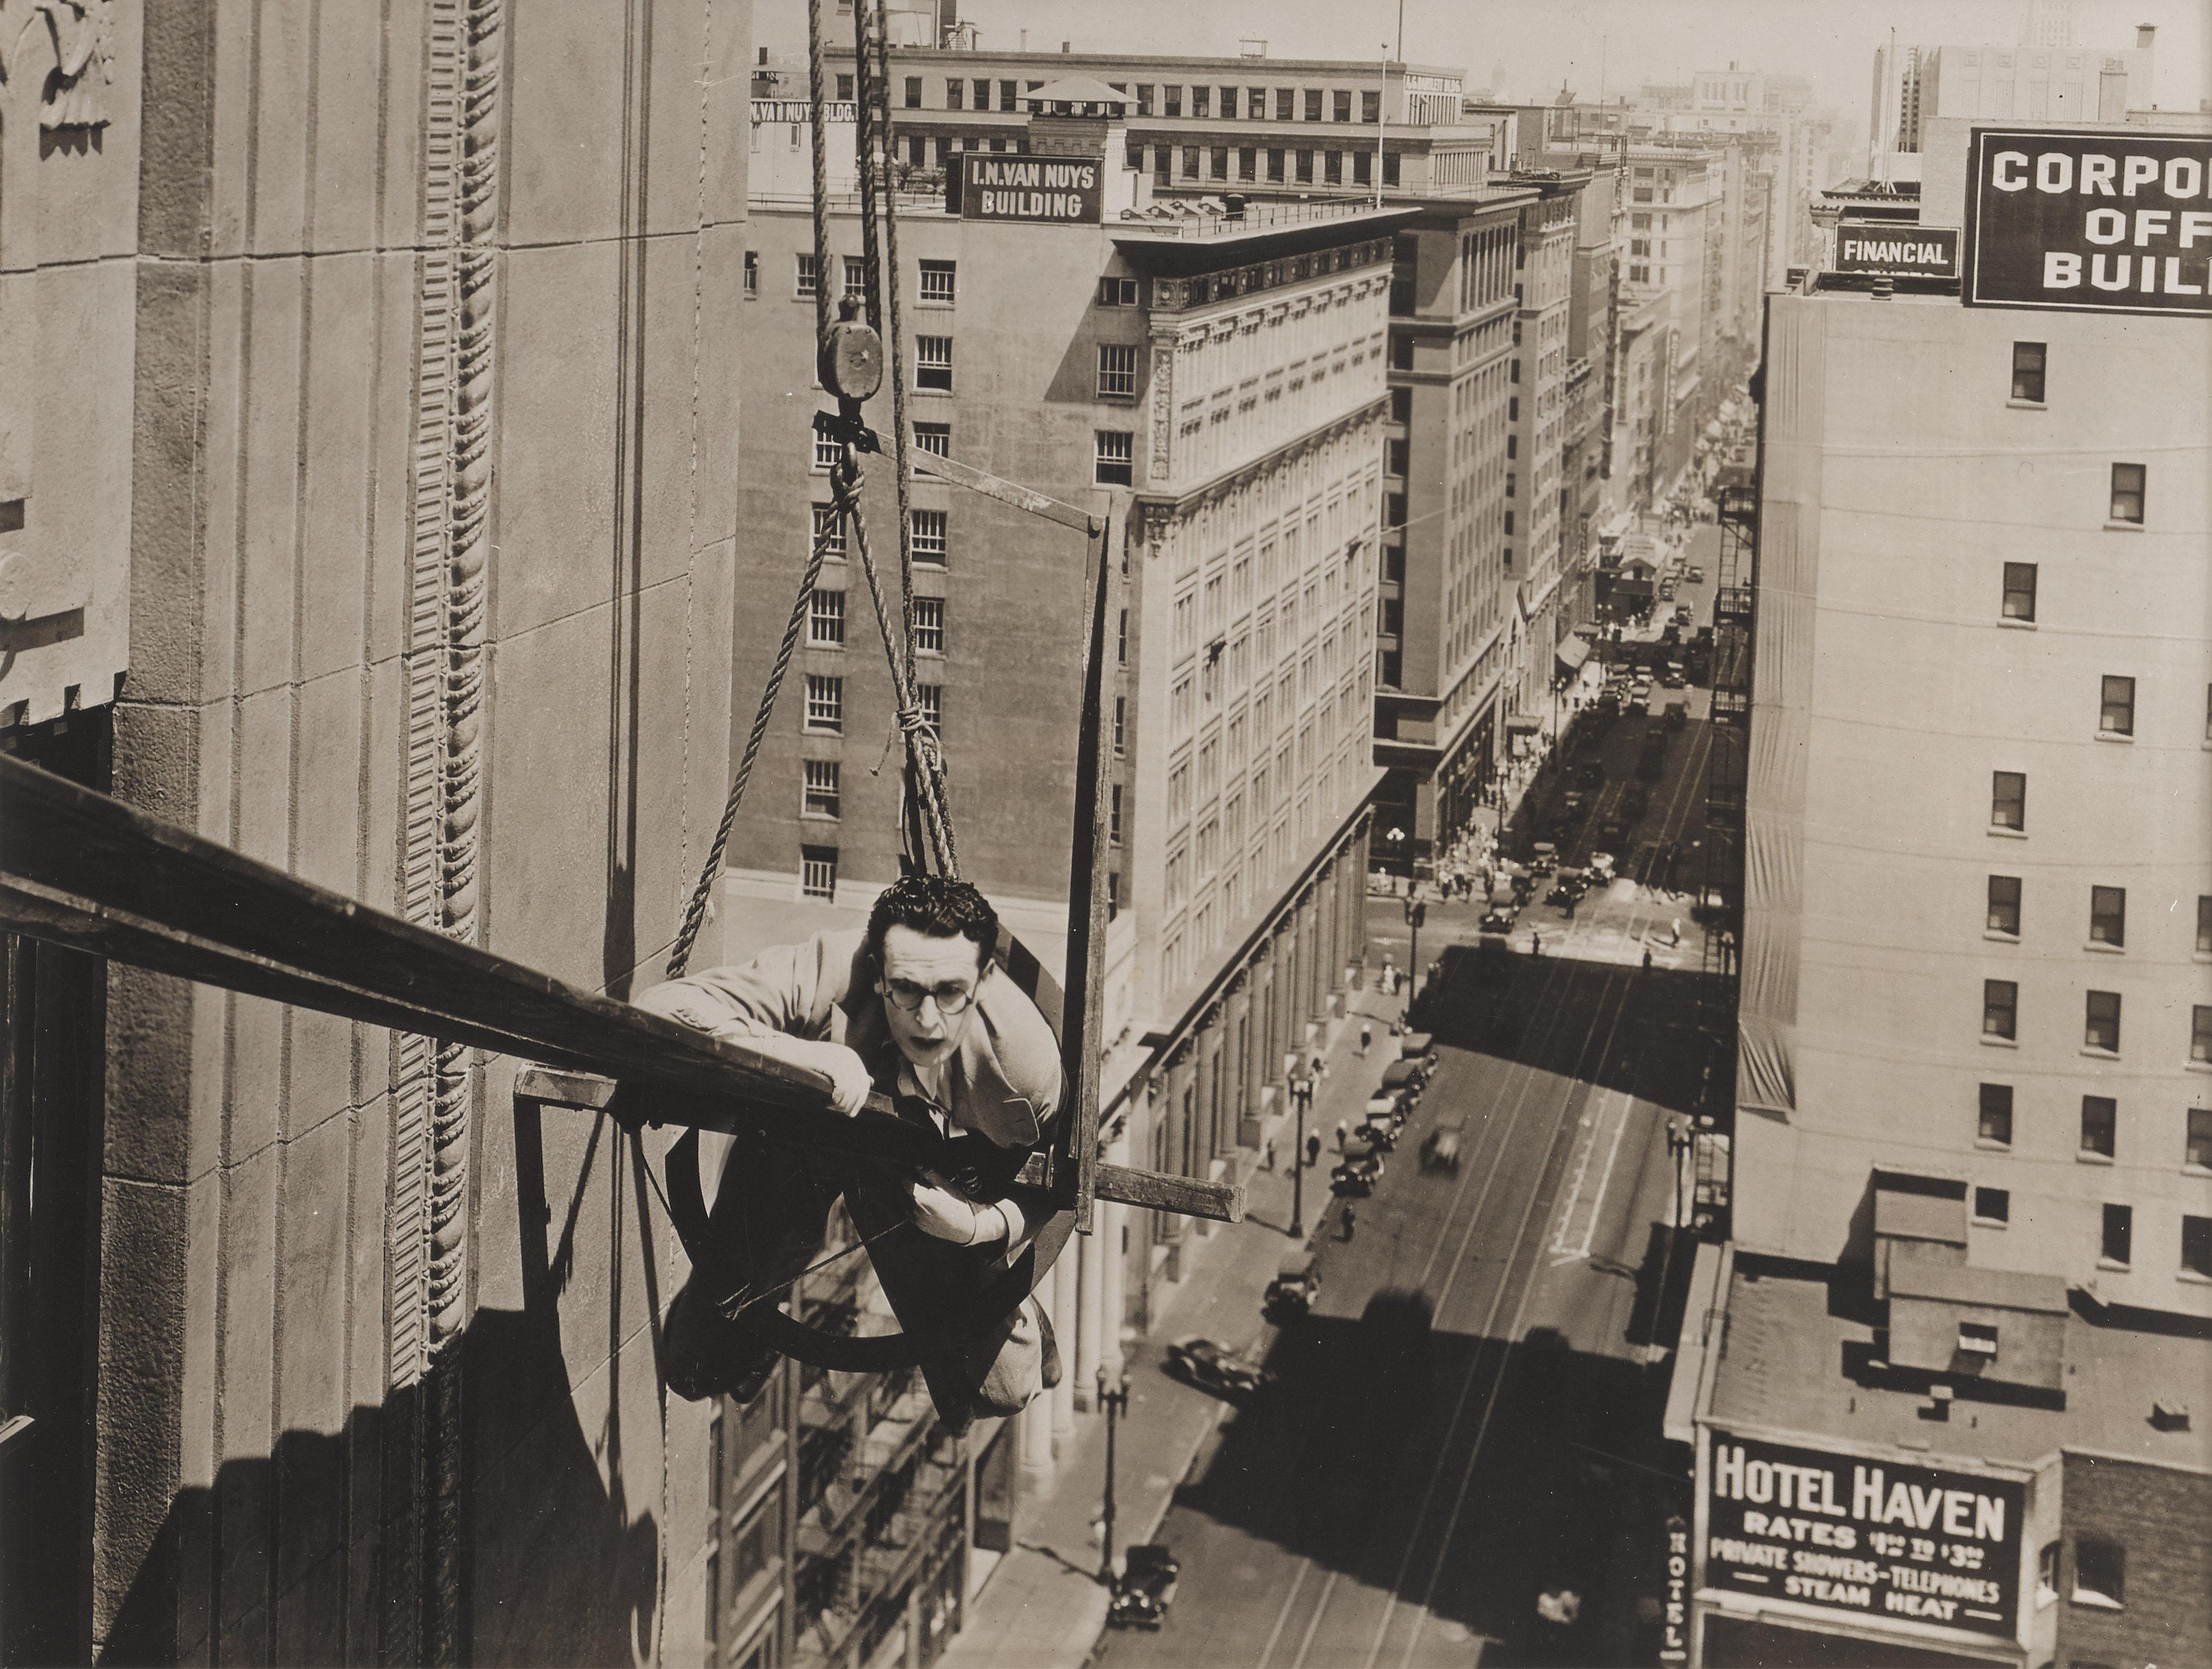 Original-Fotostandbild für die Harold-Lloyd-Komödie Feet First von 1930.
Die Regie bei diesem Film führten Clyde Bruckman und Harold Lloyd.
Dieses Werk ist in einem Sapele-Holzrahmen mit säurefreien Passepartouts und UV-Plexiglas gerahmt.
Die